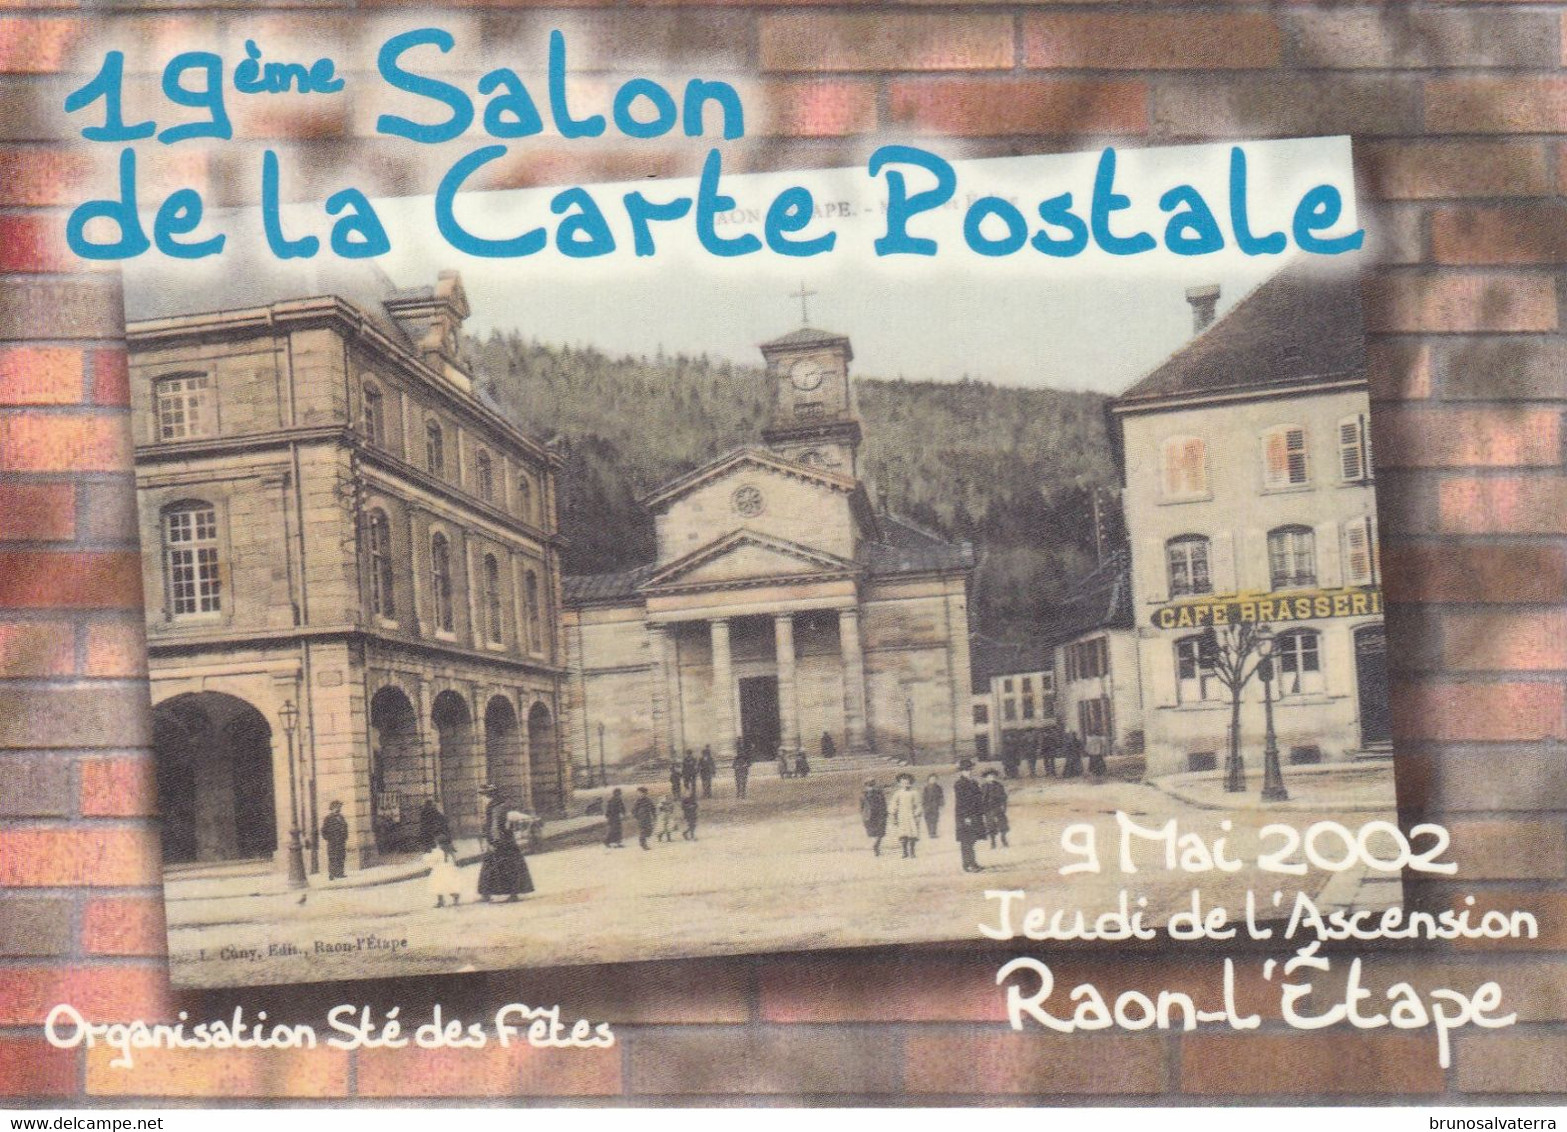 RAON L'ETAPE - 19° SALON DE LA CARTE POSTALE 9 MAI 2002 - Bourses & Salons De Collections